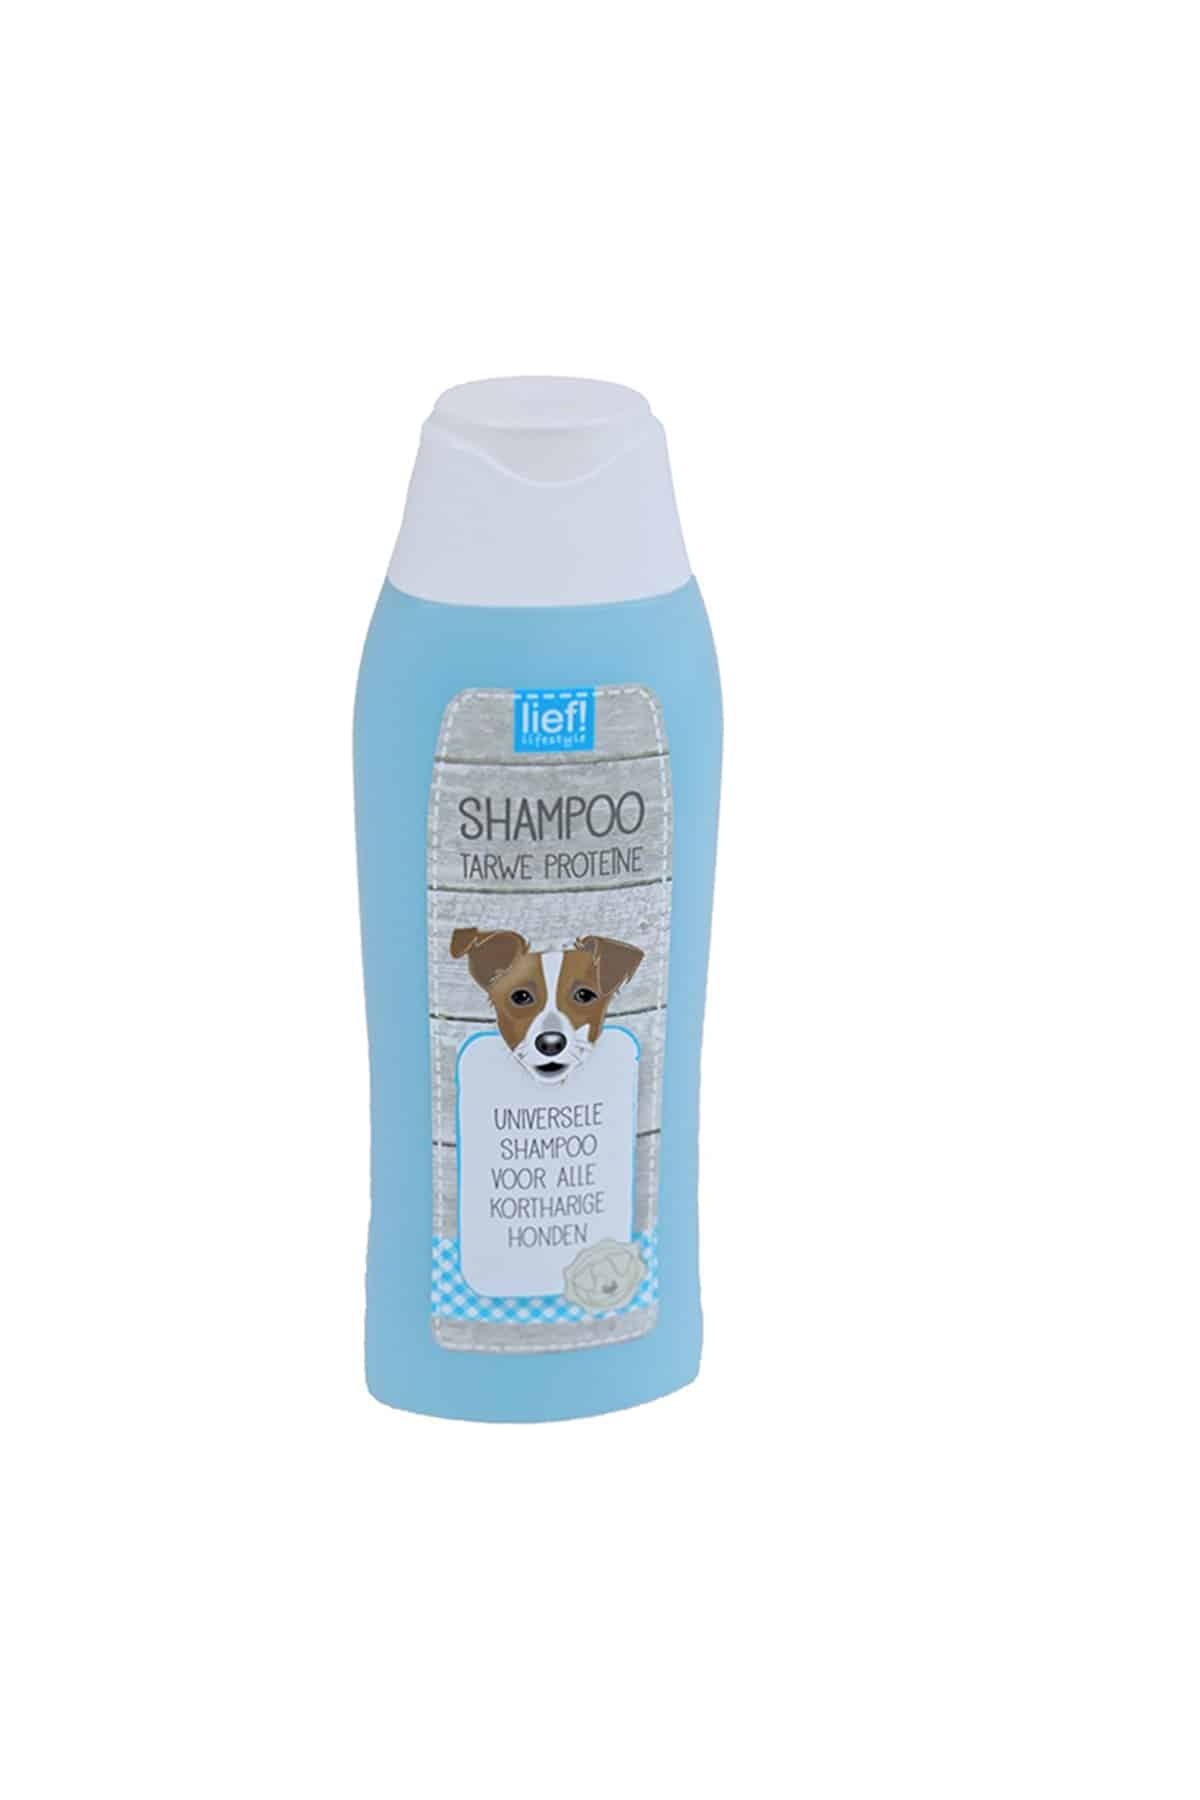 Oswald veiligheid Crimineel Lief! universeel shampoo voor kortharige honden . Voor een frisse hond.